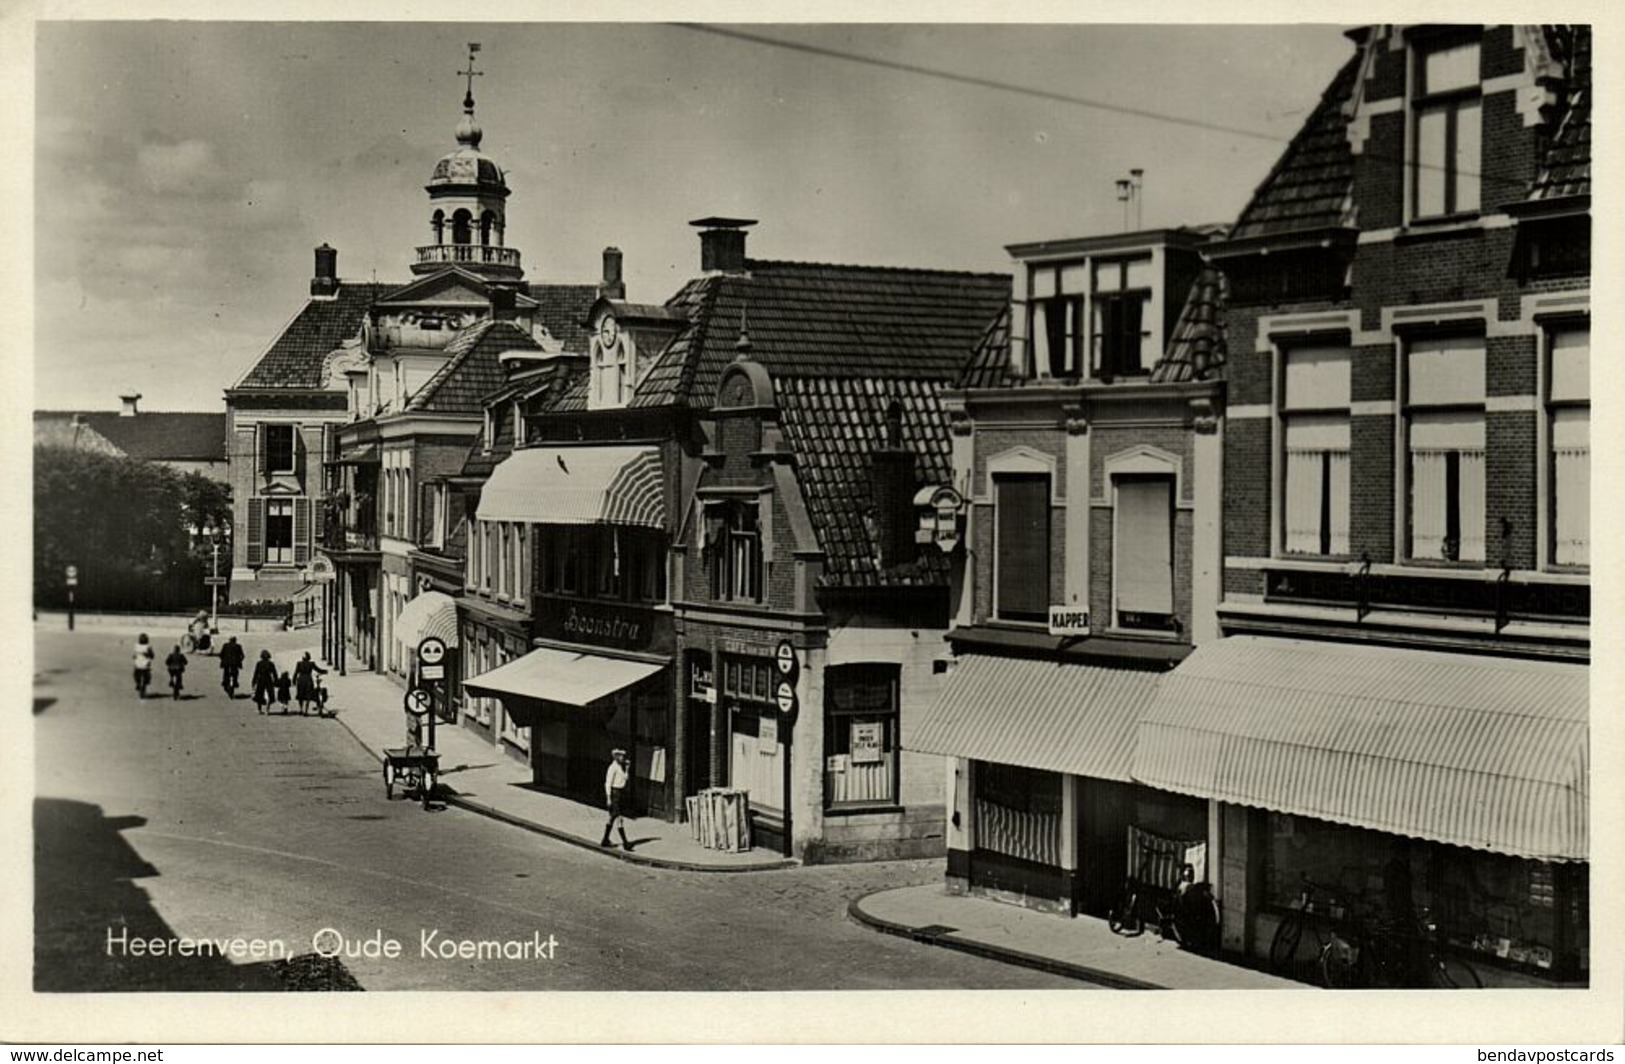 Nederland, HEERENVEEN, Oude Koemarkt (1940s) Ansichtkaart - Heerenveen